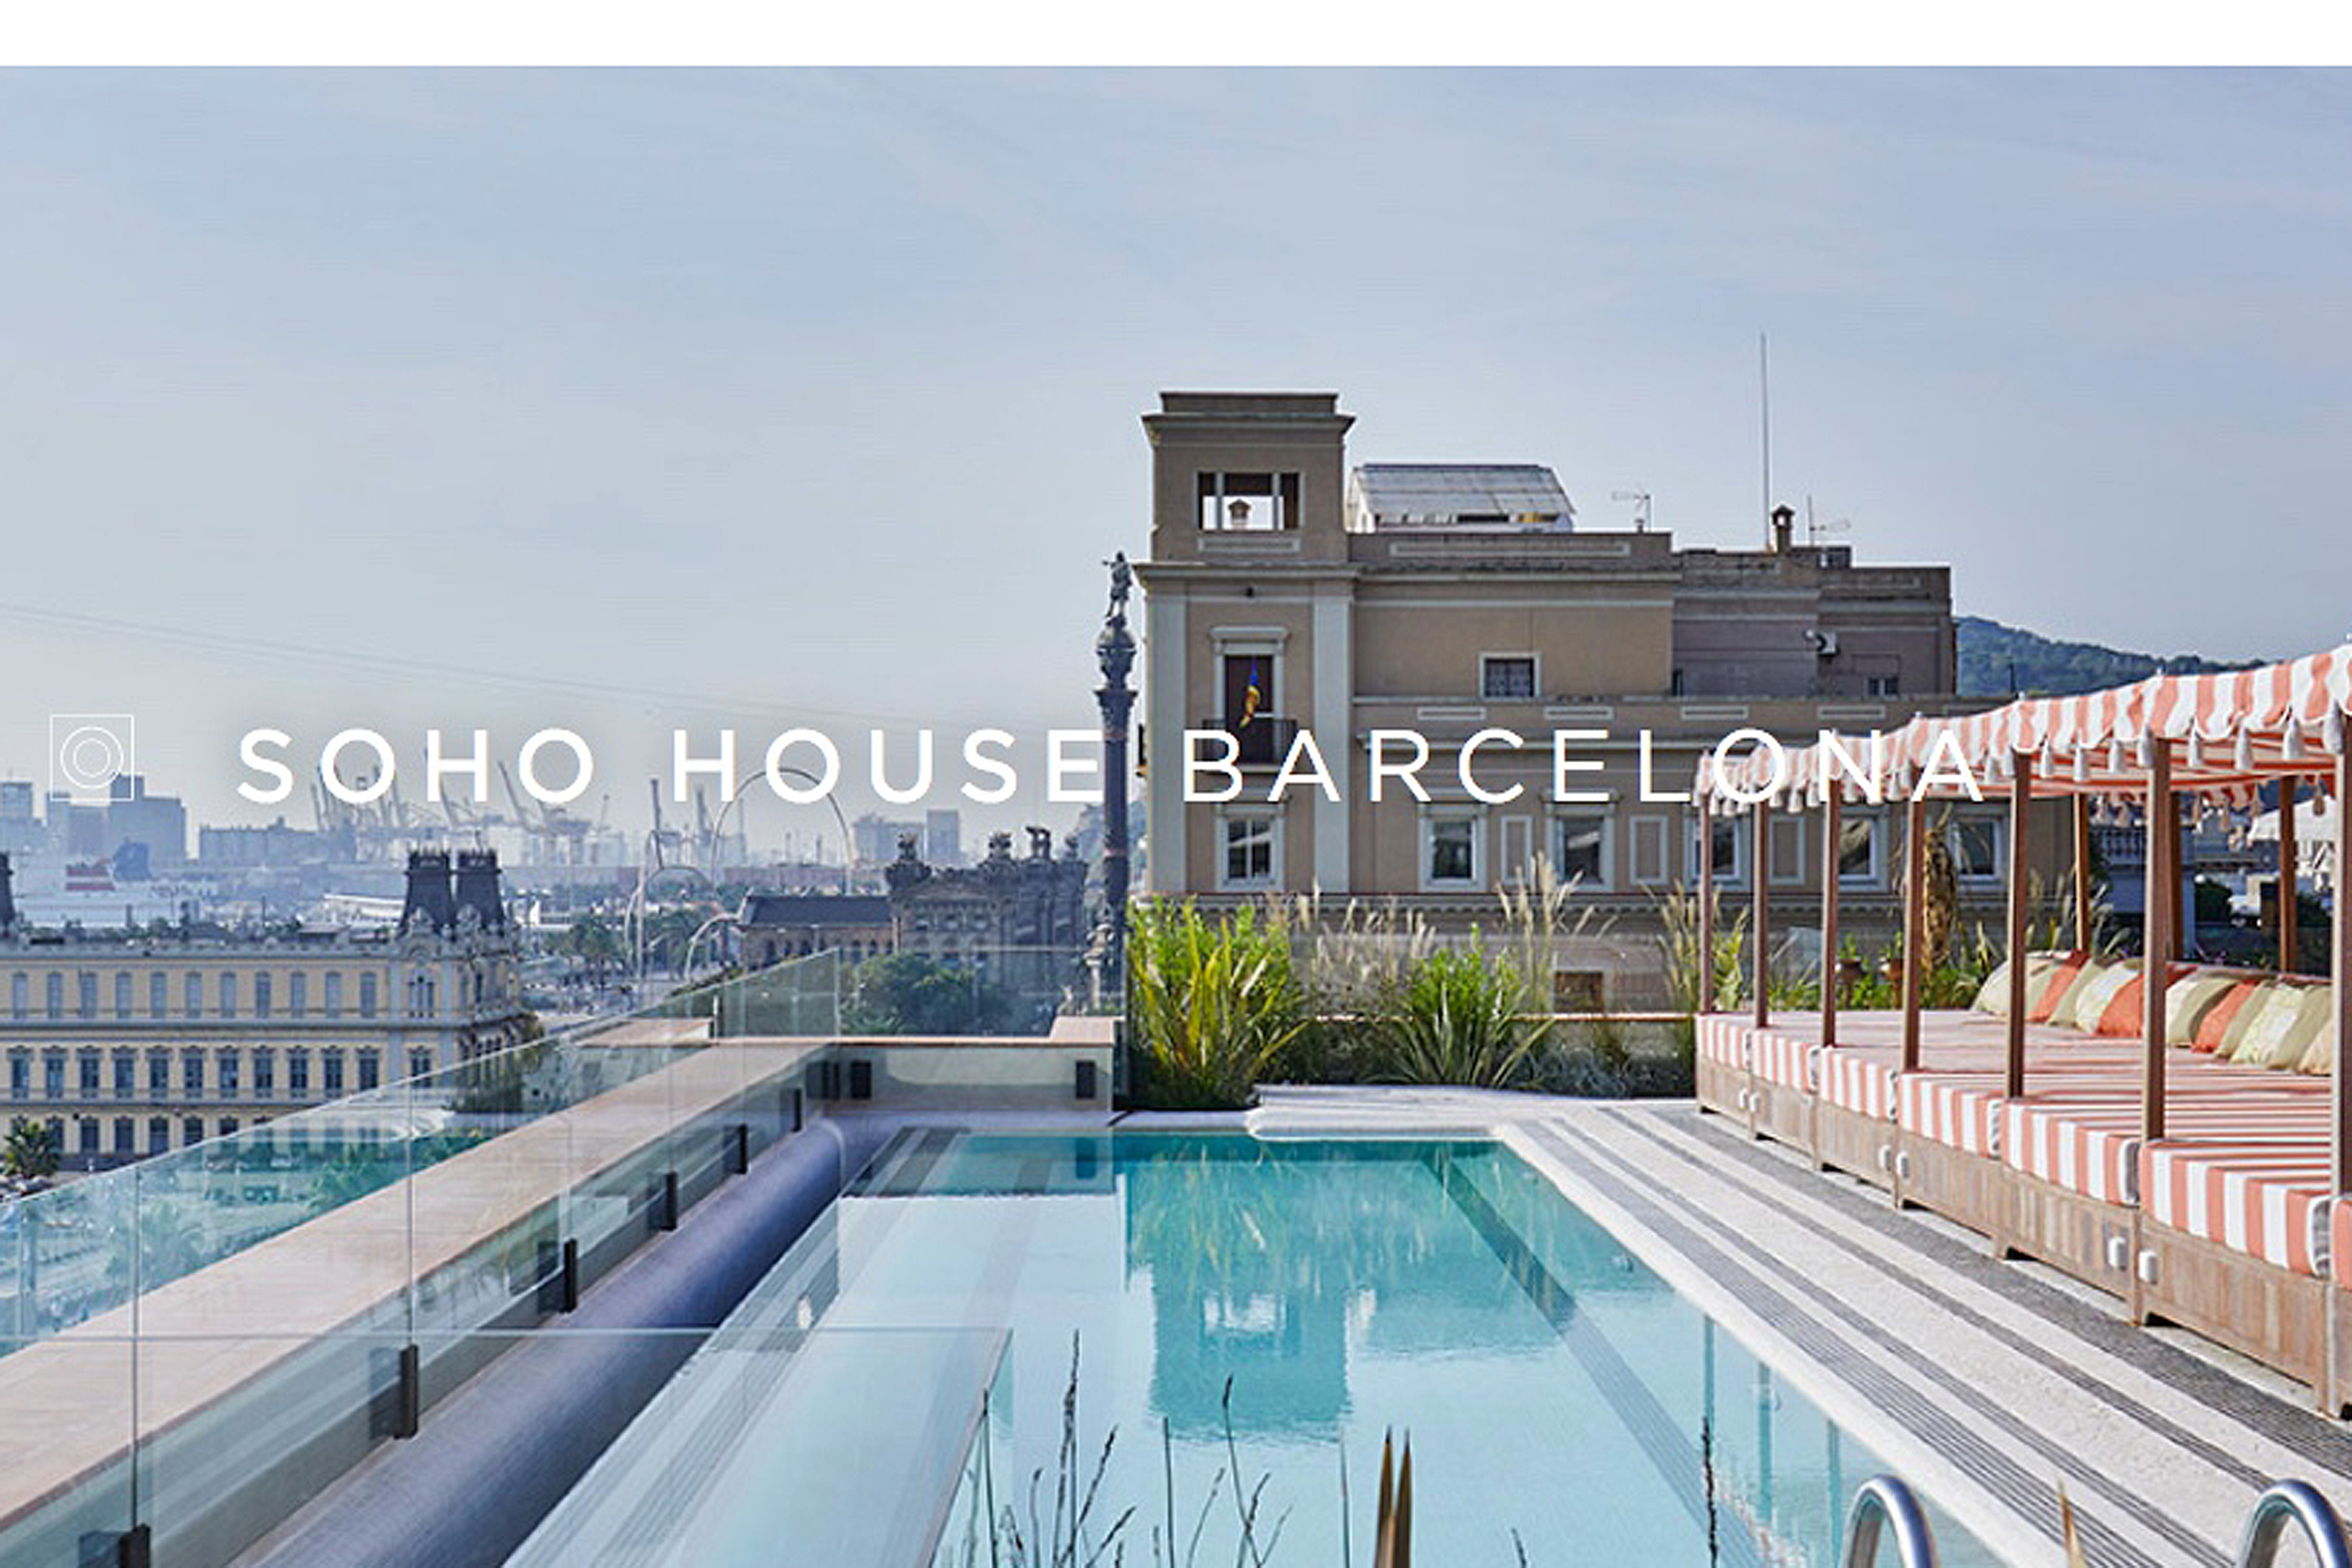 Soho House Barcelona - Get Ink Pr